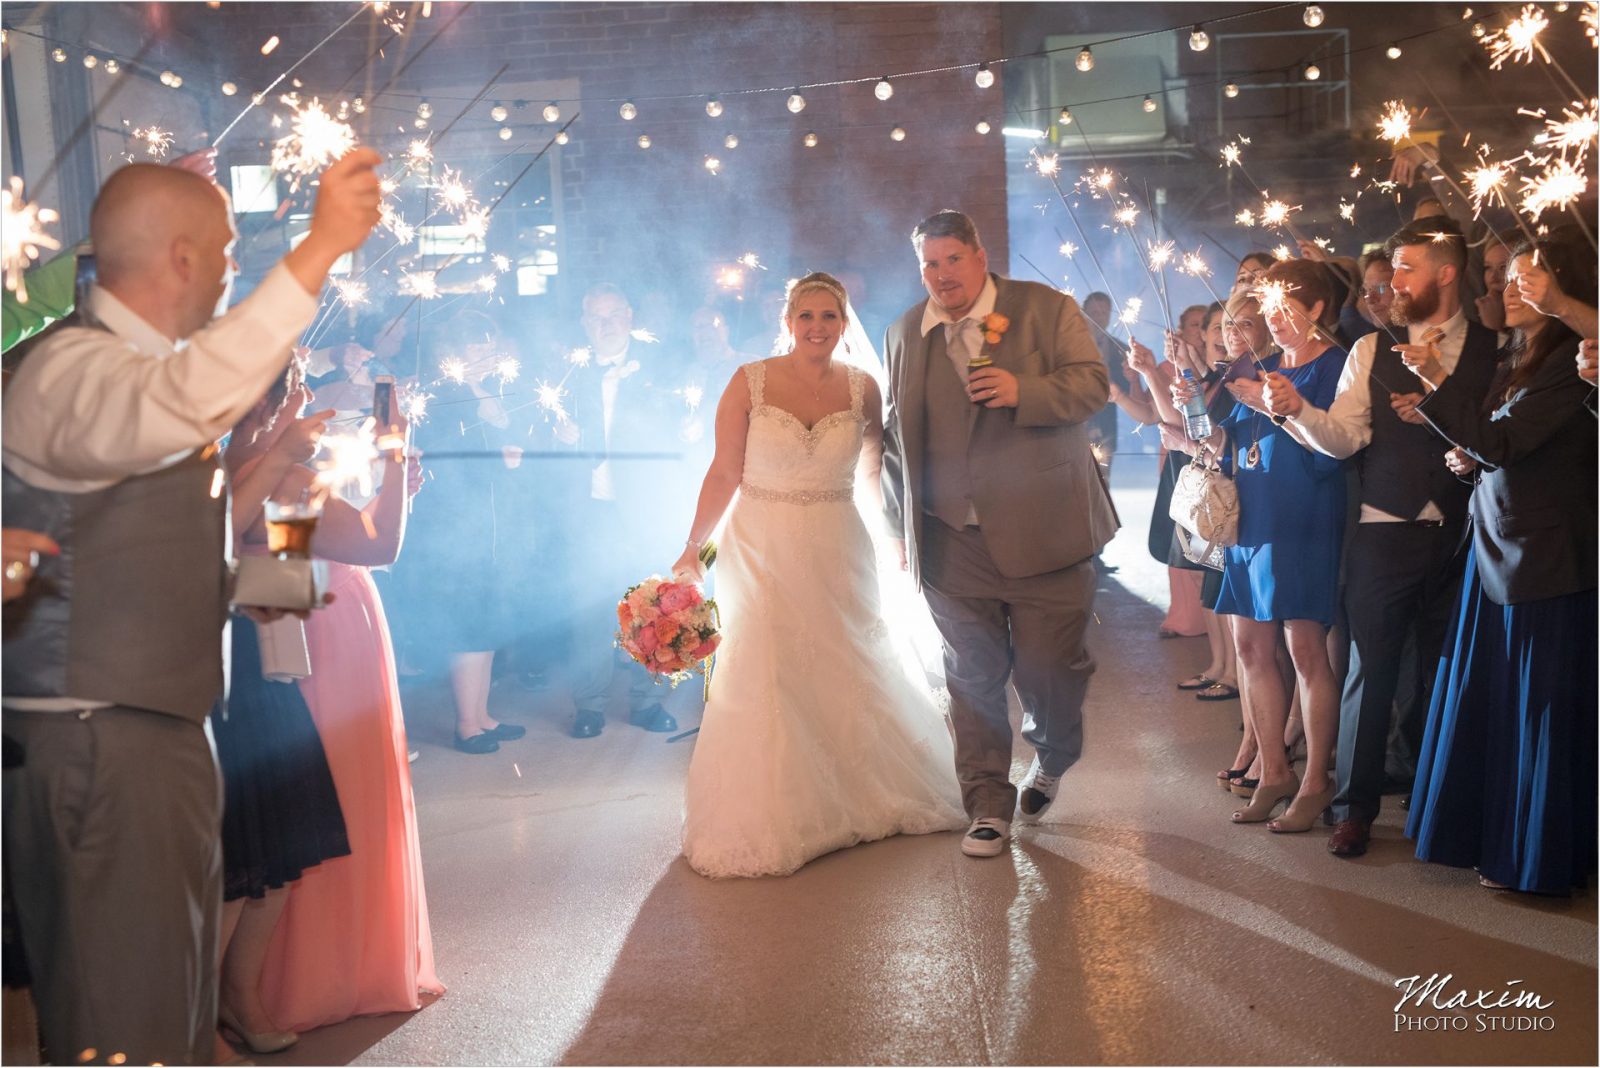 Top of the Market Dayton Ohio Wedding Reception sparkler exit